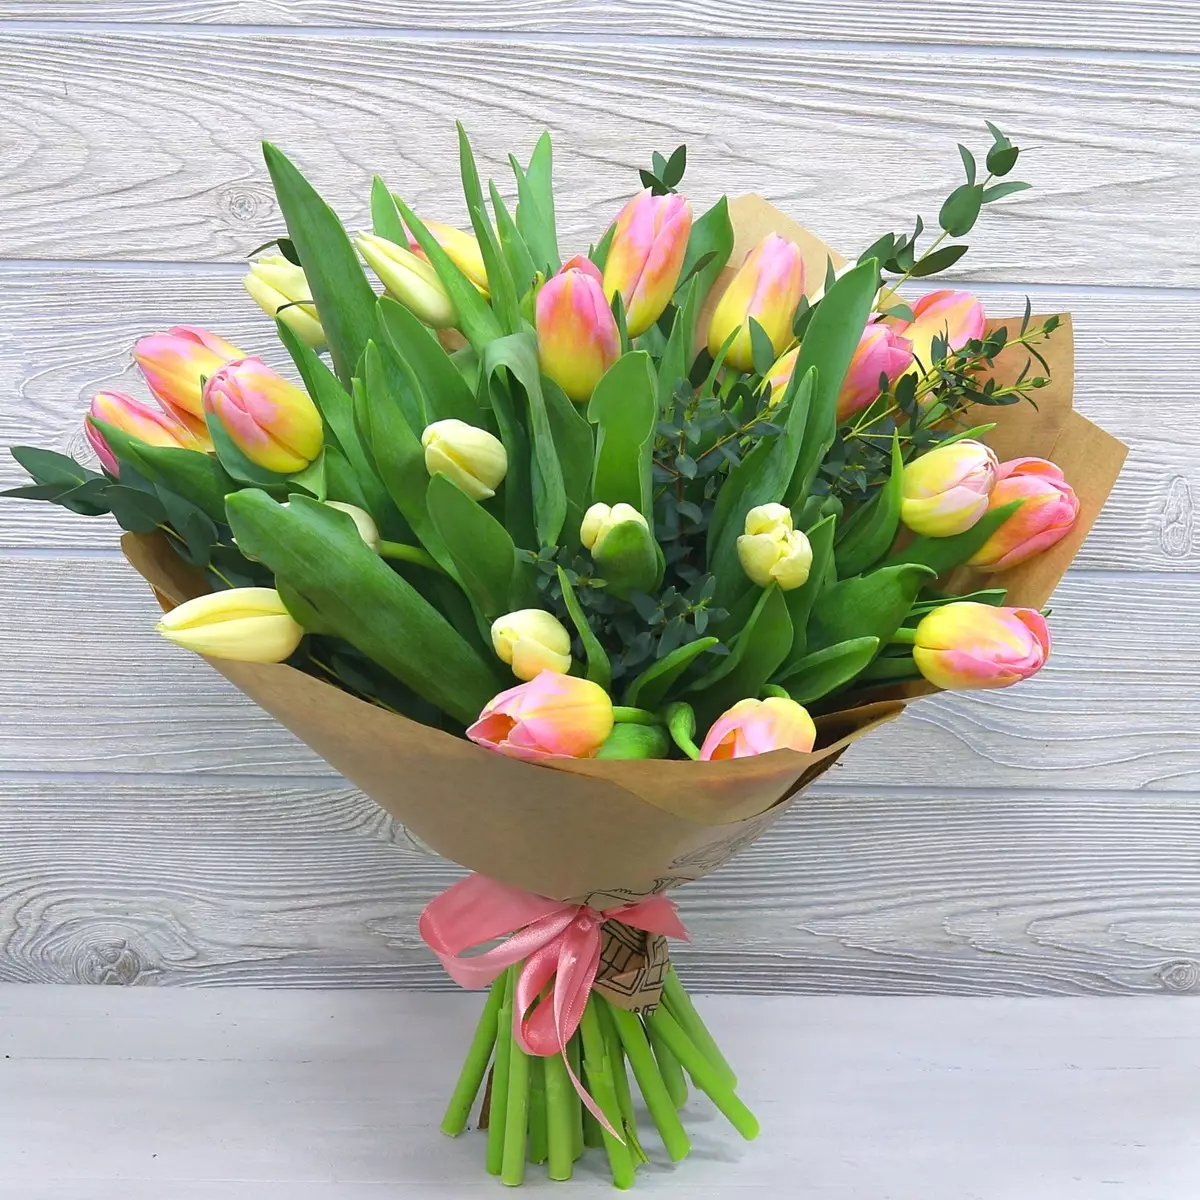 Virágok március 8-án: Mit adnak a lányok és a nők? Mi jobb, ha feleségem adni? Mit adnak el általában? Miért lehetséges a tulipánok megadása? 18190_37